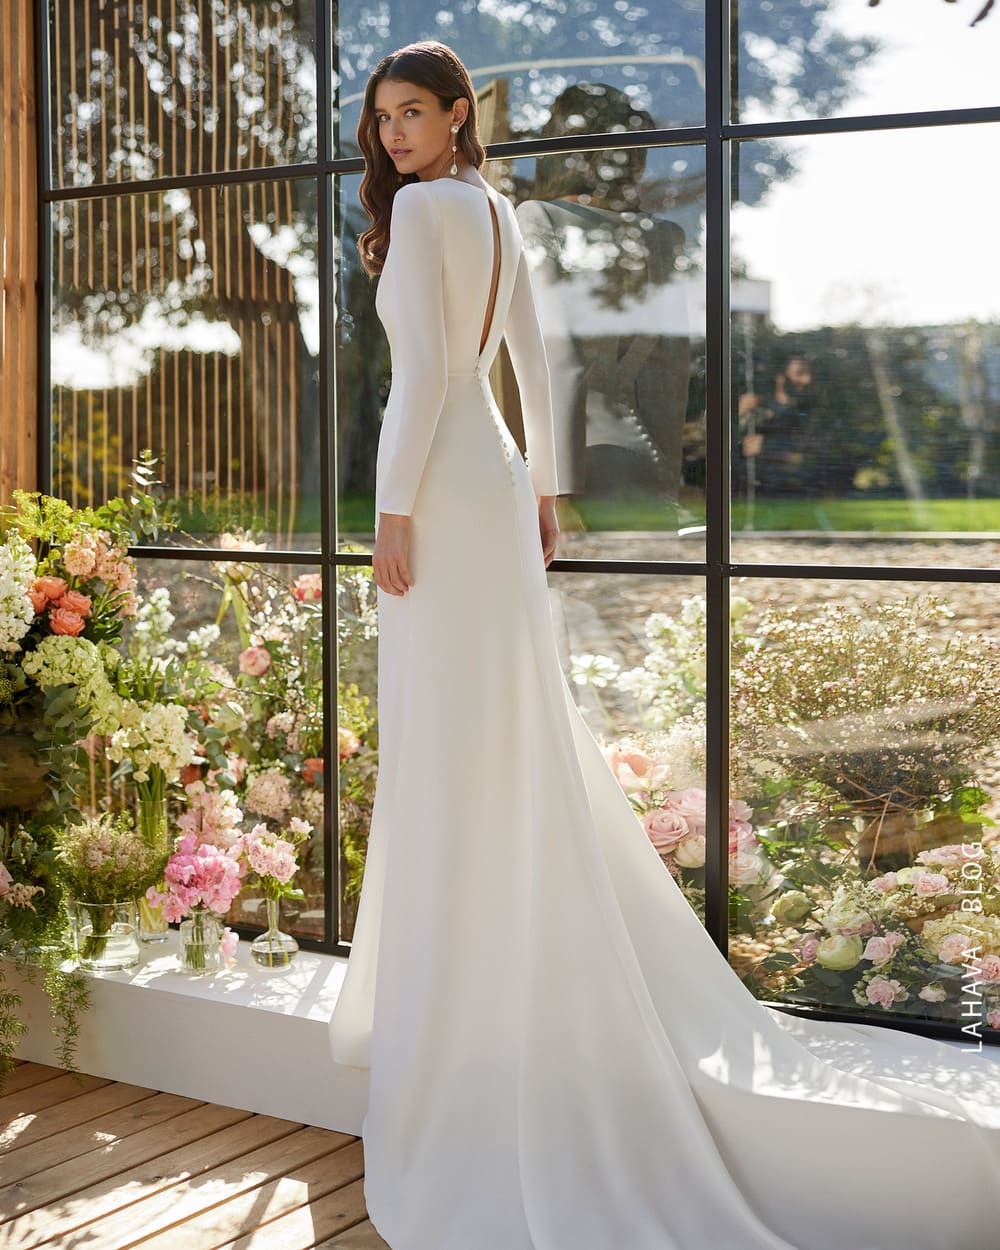 May váy áo cưới sang trọng, thanh lịch, thiết kế riêng - Nicole Bridal